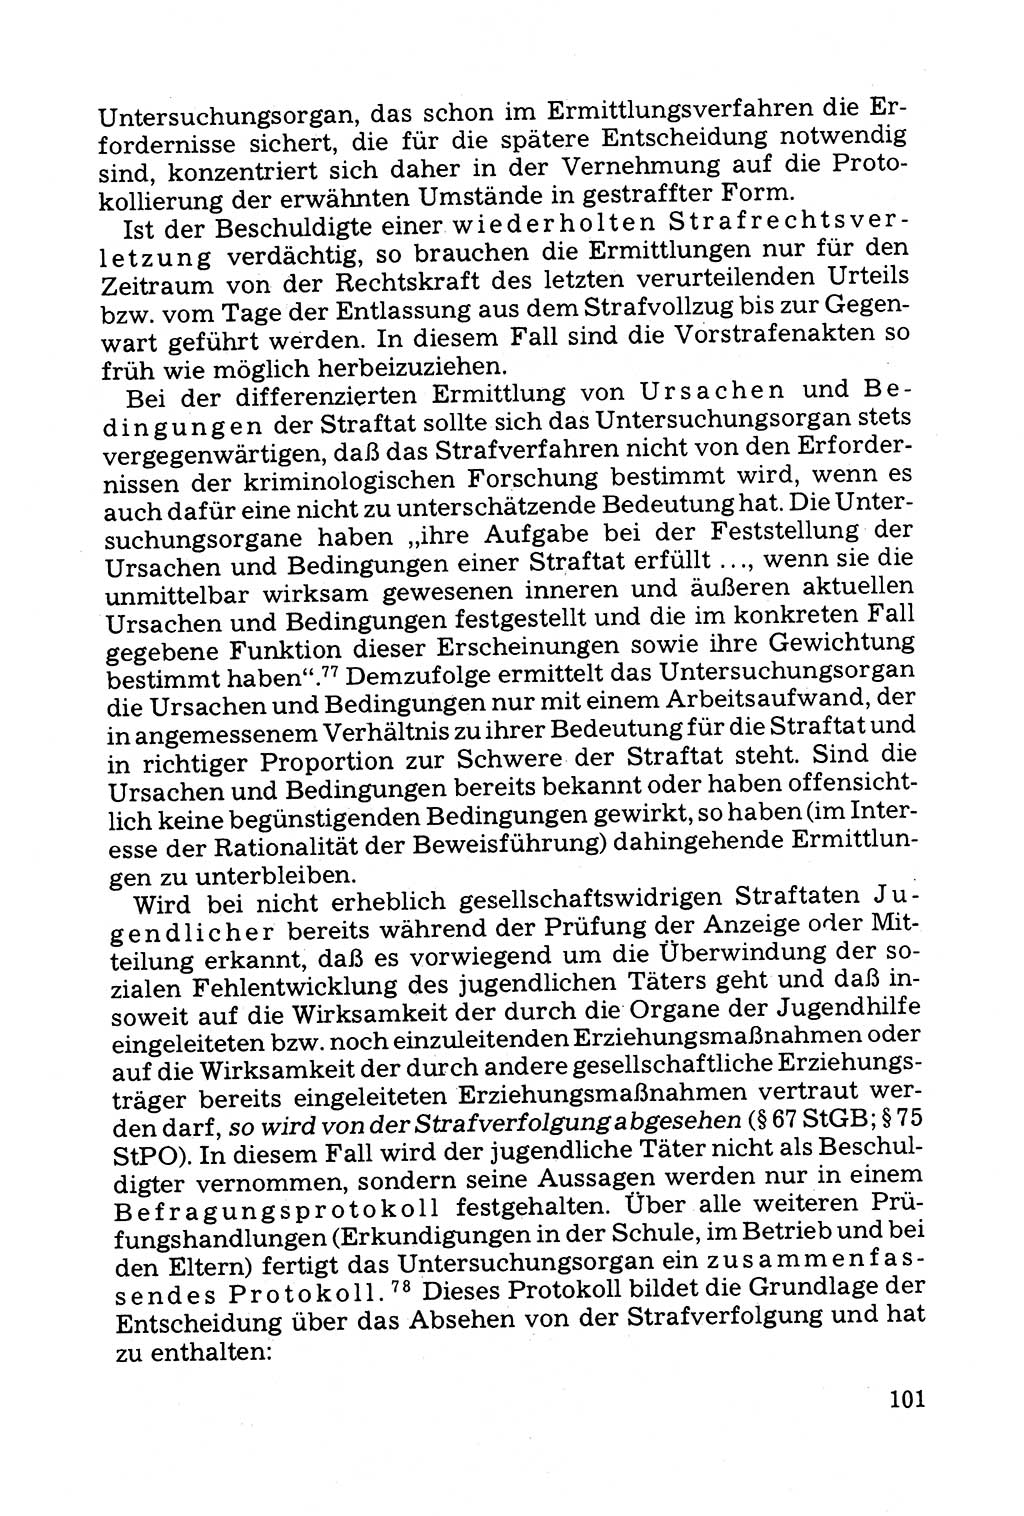 Grundfragen der Beweisführung im Ermittlungsverfahren [Deutsche Demokratische Republik (DDR)] 1980, Seite 101 (Bws.-Fhrg. EV DDR 1980, S. 101)